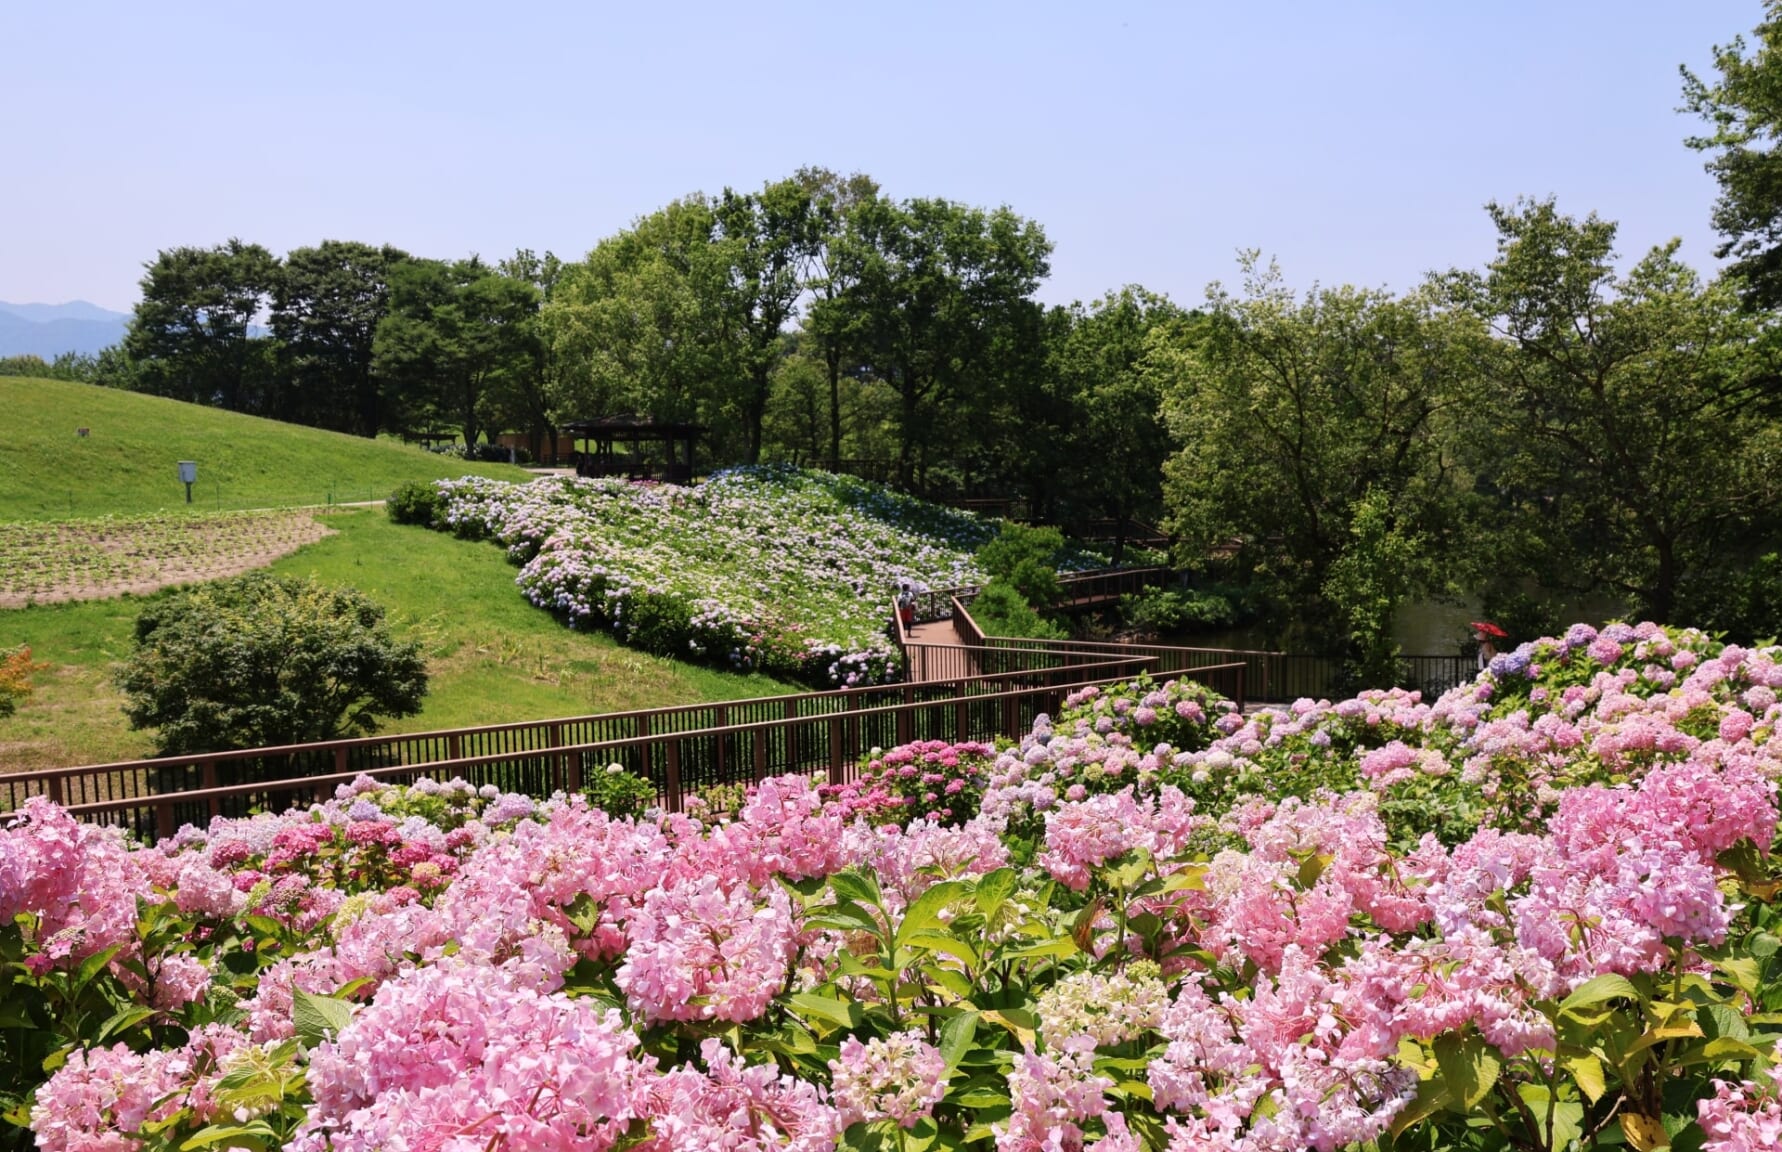 Hydrangeas at Sanuki Manno Park, Kagawa